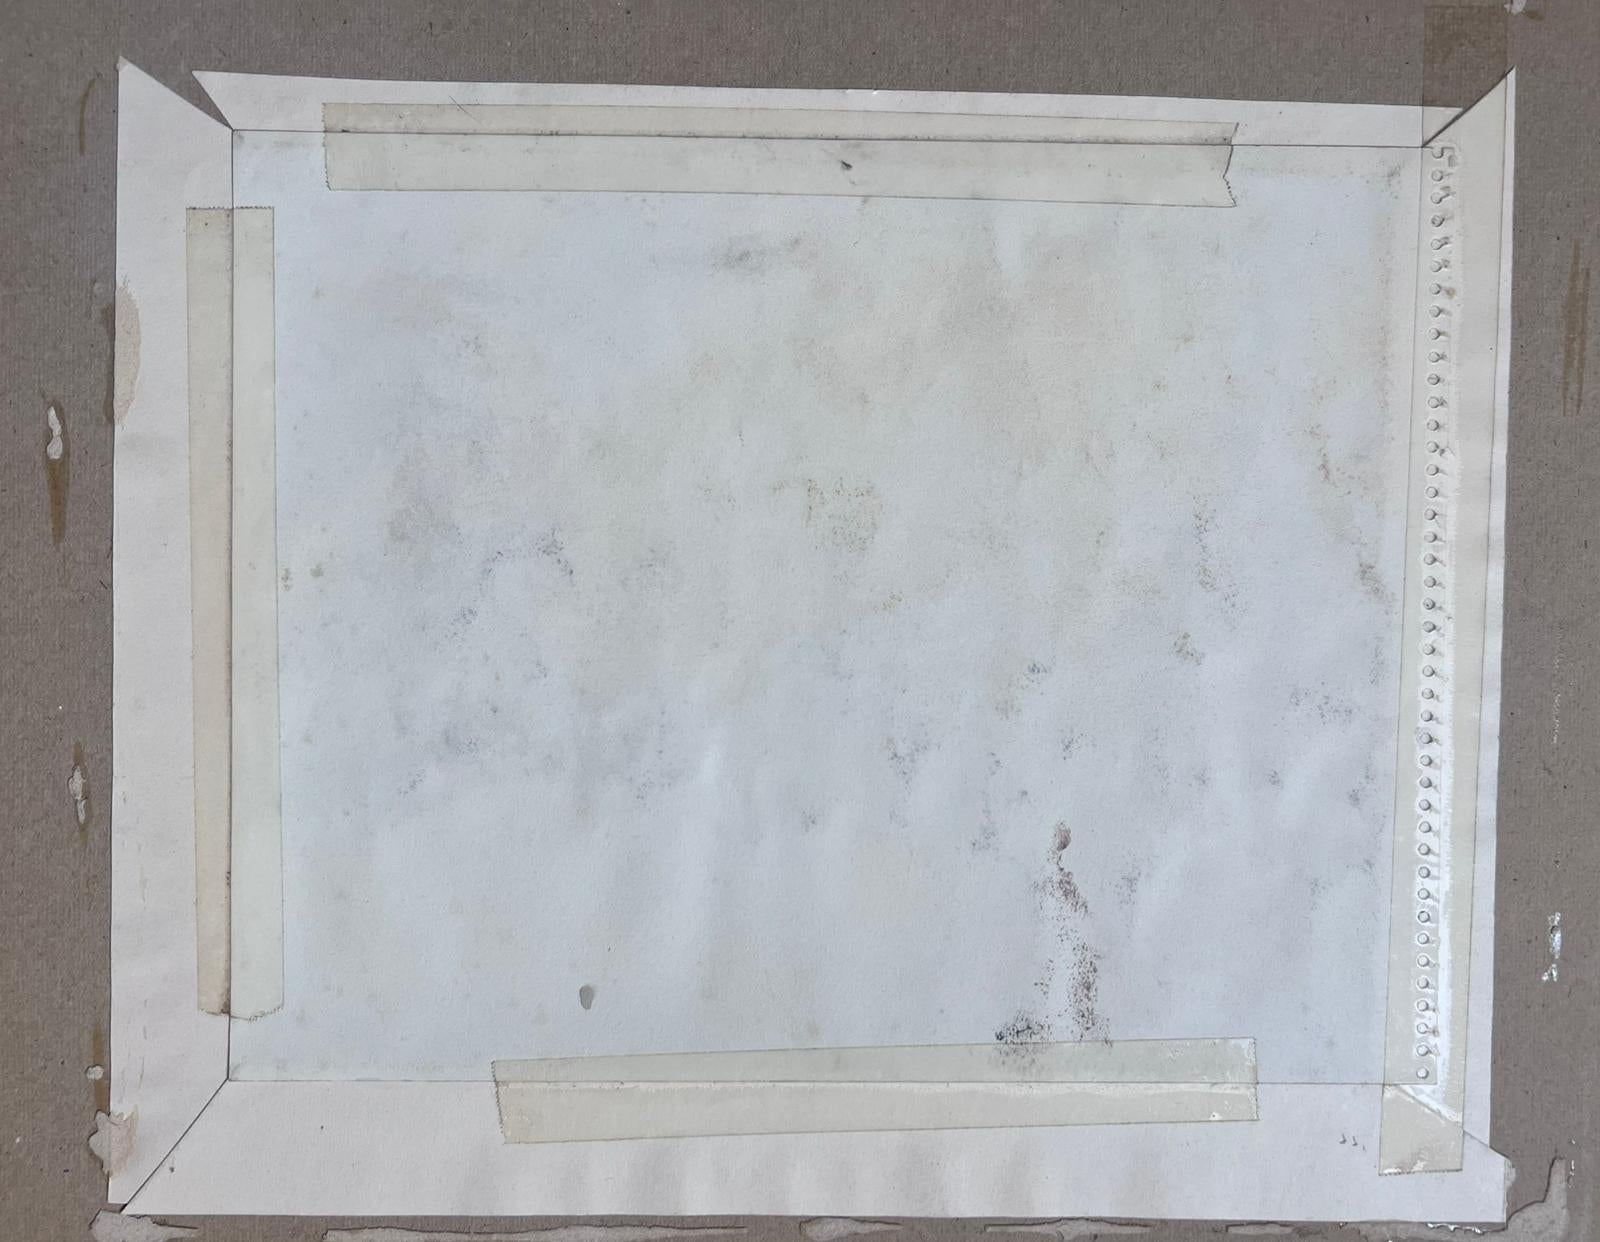 Jean La Forgue (Französisch 1901-1975) signiertes Aquarell auf Papier, in einen Papprahmen montiert
Kartenrahmen: 12 x 14,5 Zoll
Gemälde: 8 x 10 Zoll
Herkunft: Nachlass des Künstlers, Frankreich
Zustand: sehr guter und gesunder Zustand; es gibt